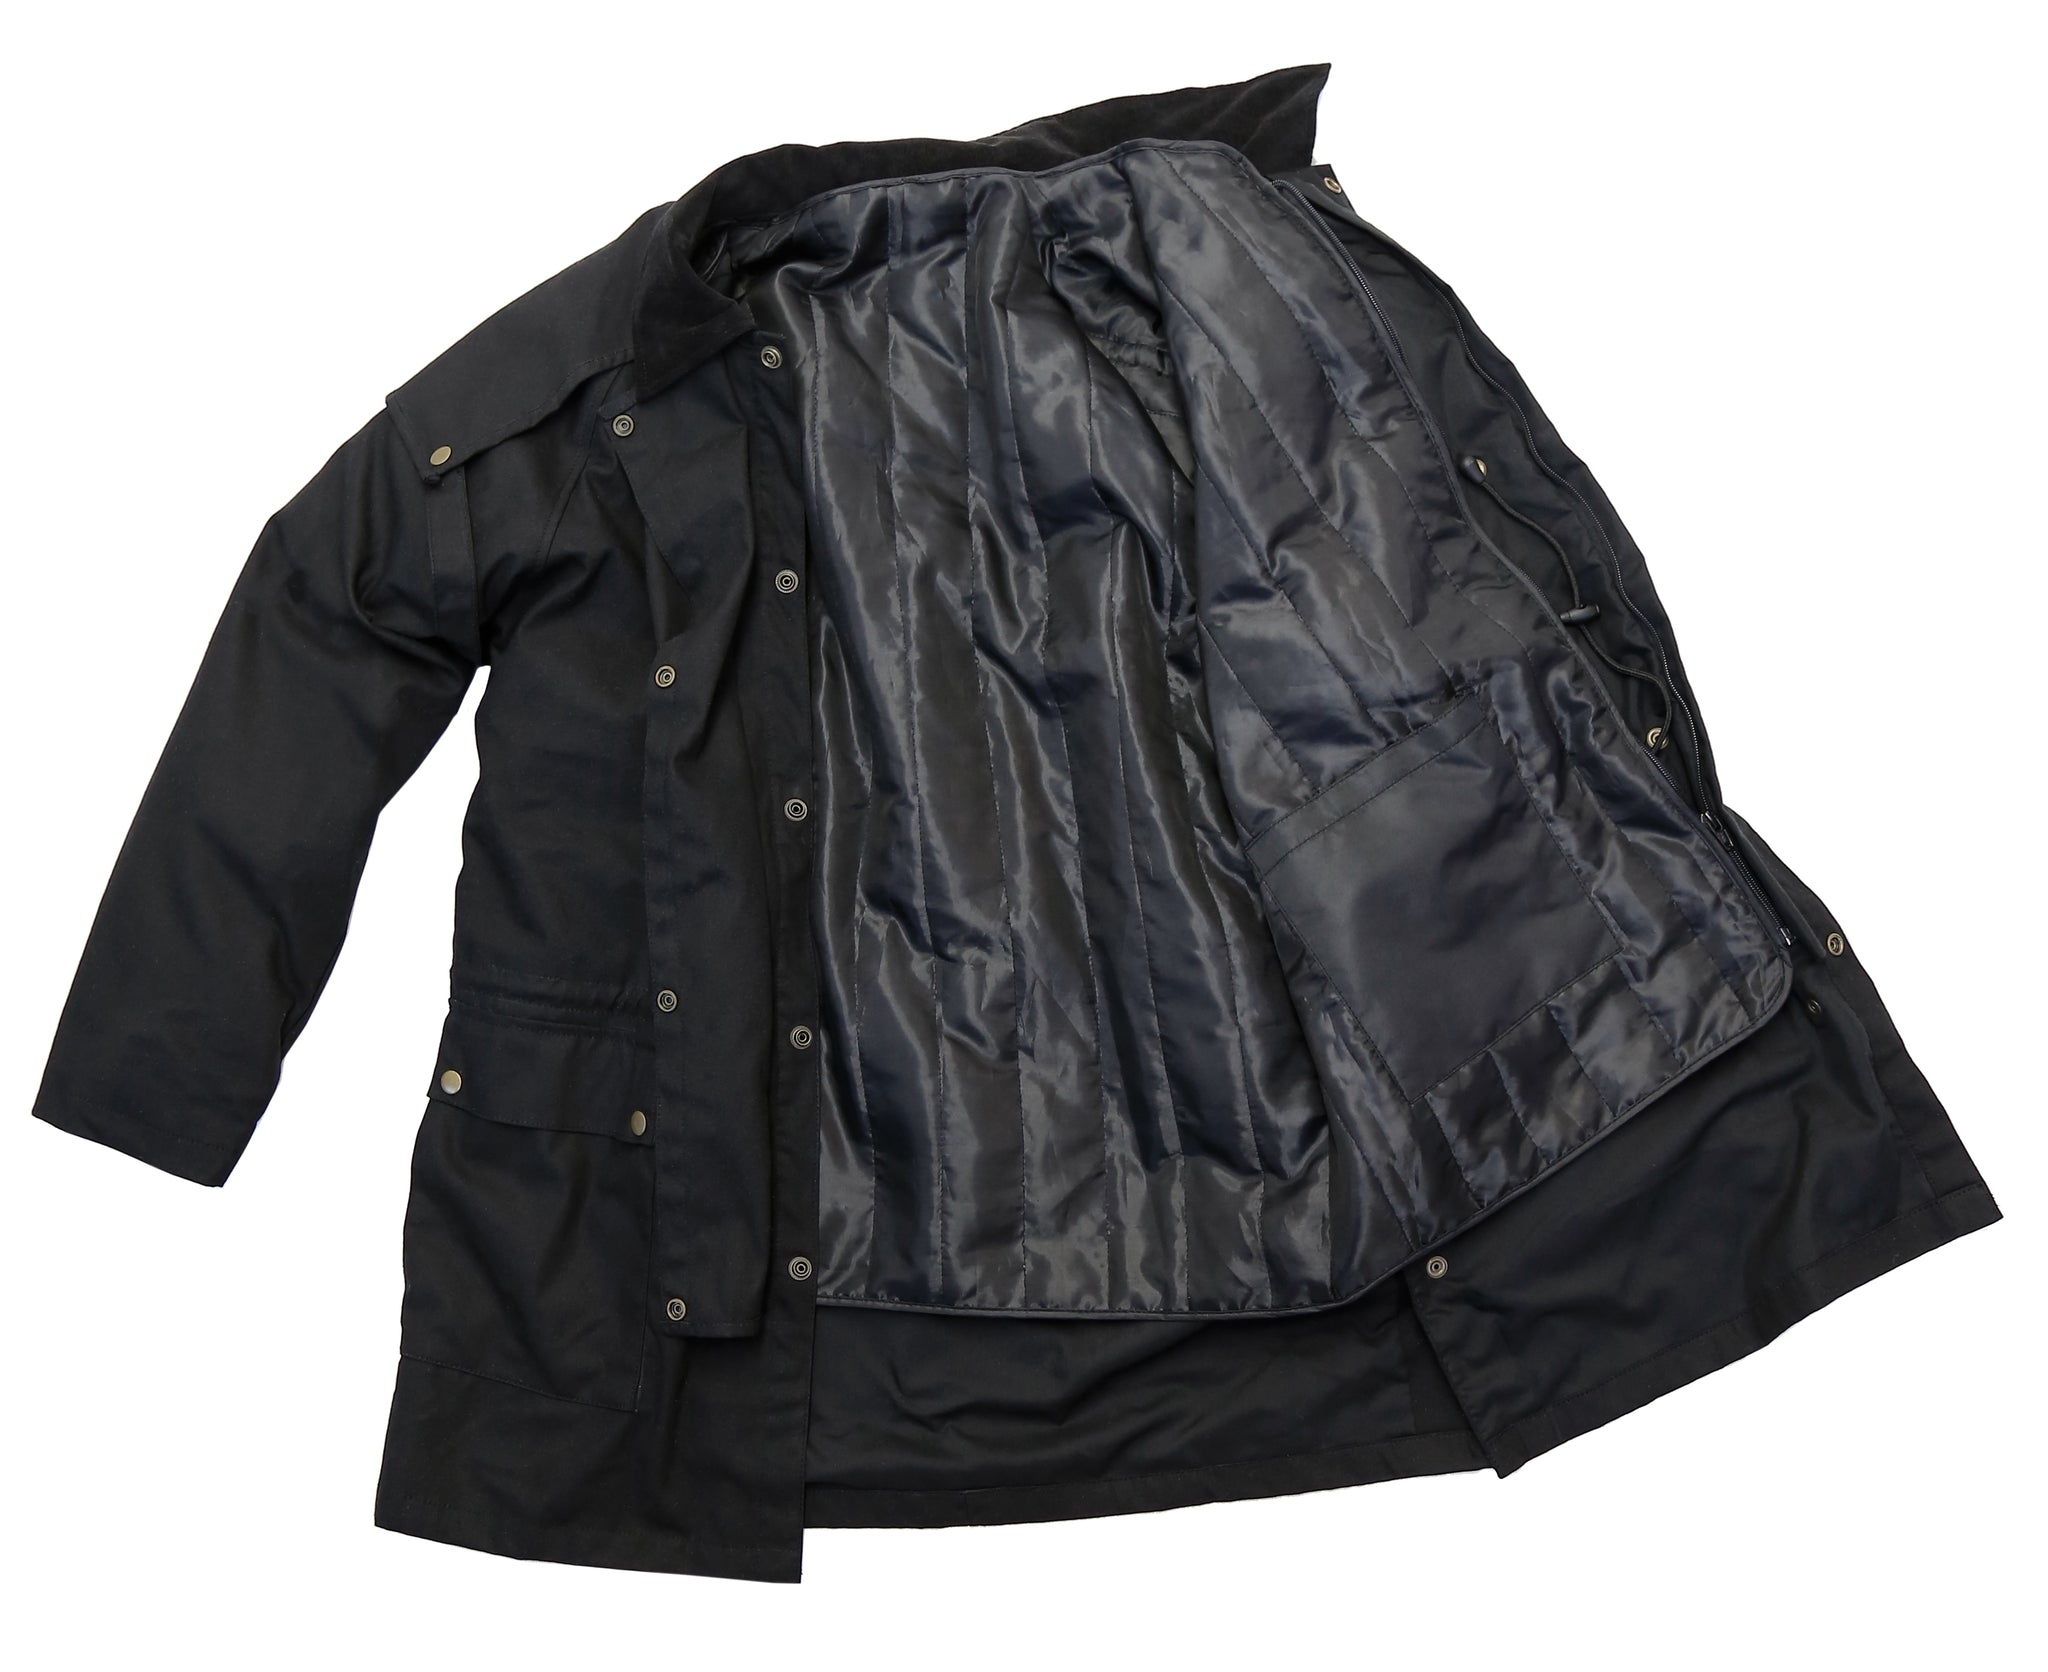 Drover, Australische outdoor jas in het zwart The King`s